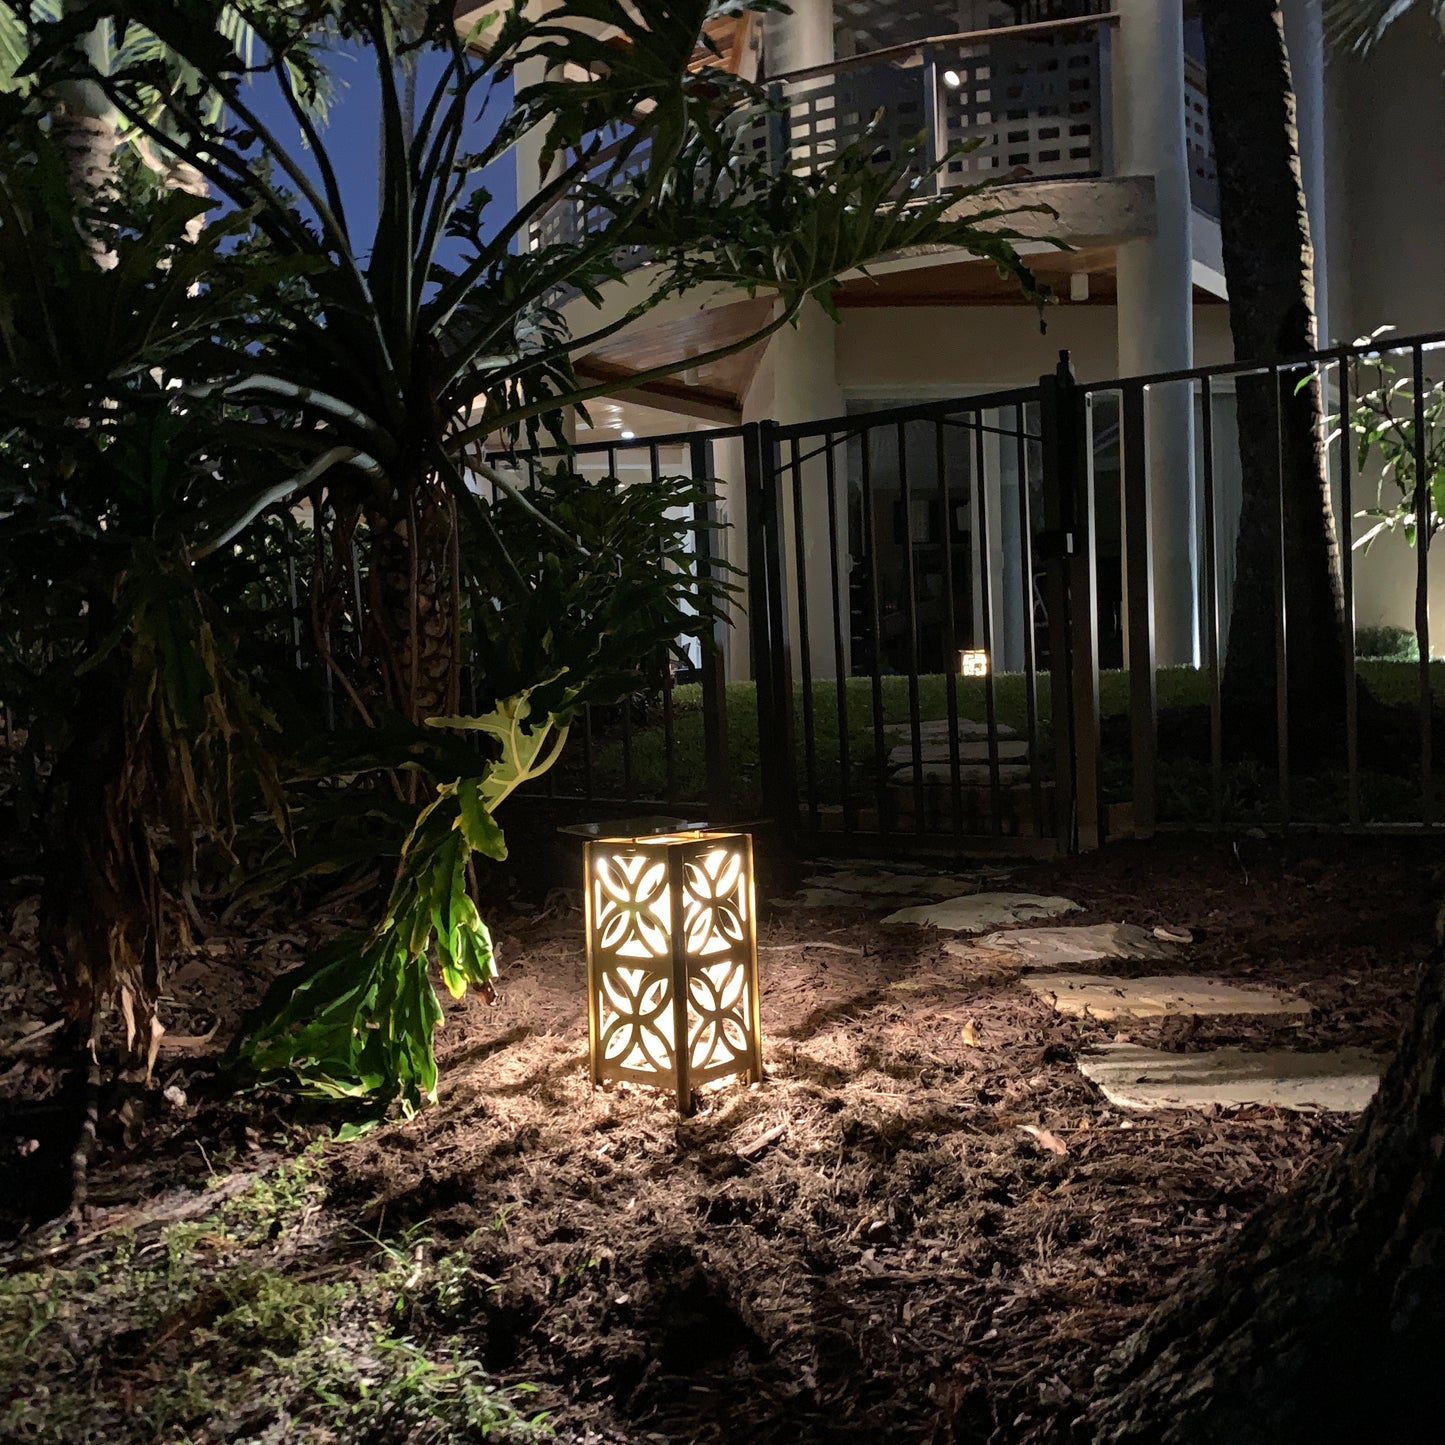 RadiantLight Mid-Century Landscape Light - Garden Light at night